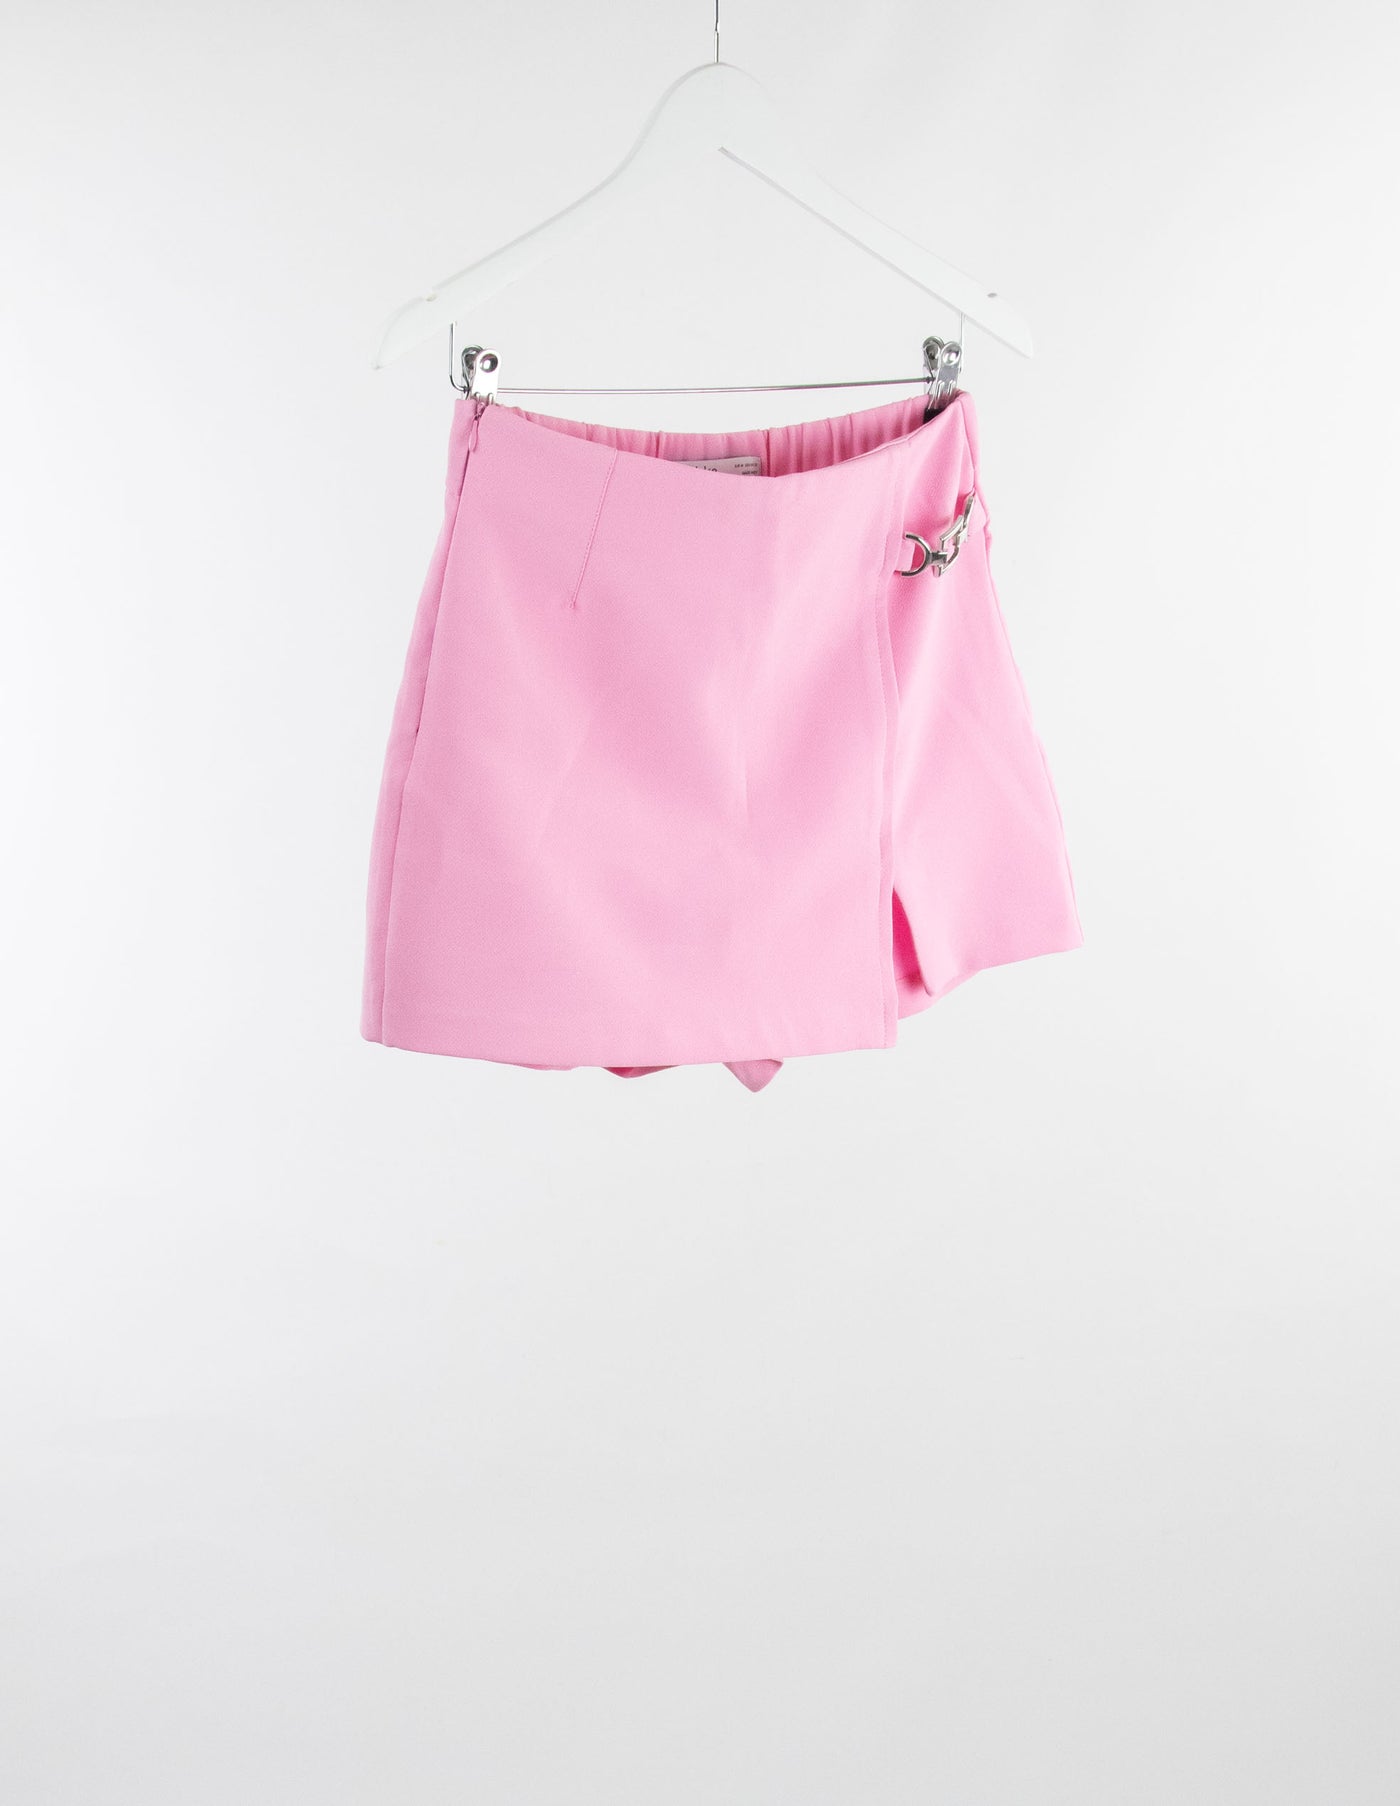 Falda pantalón rosa